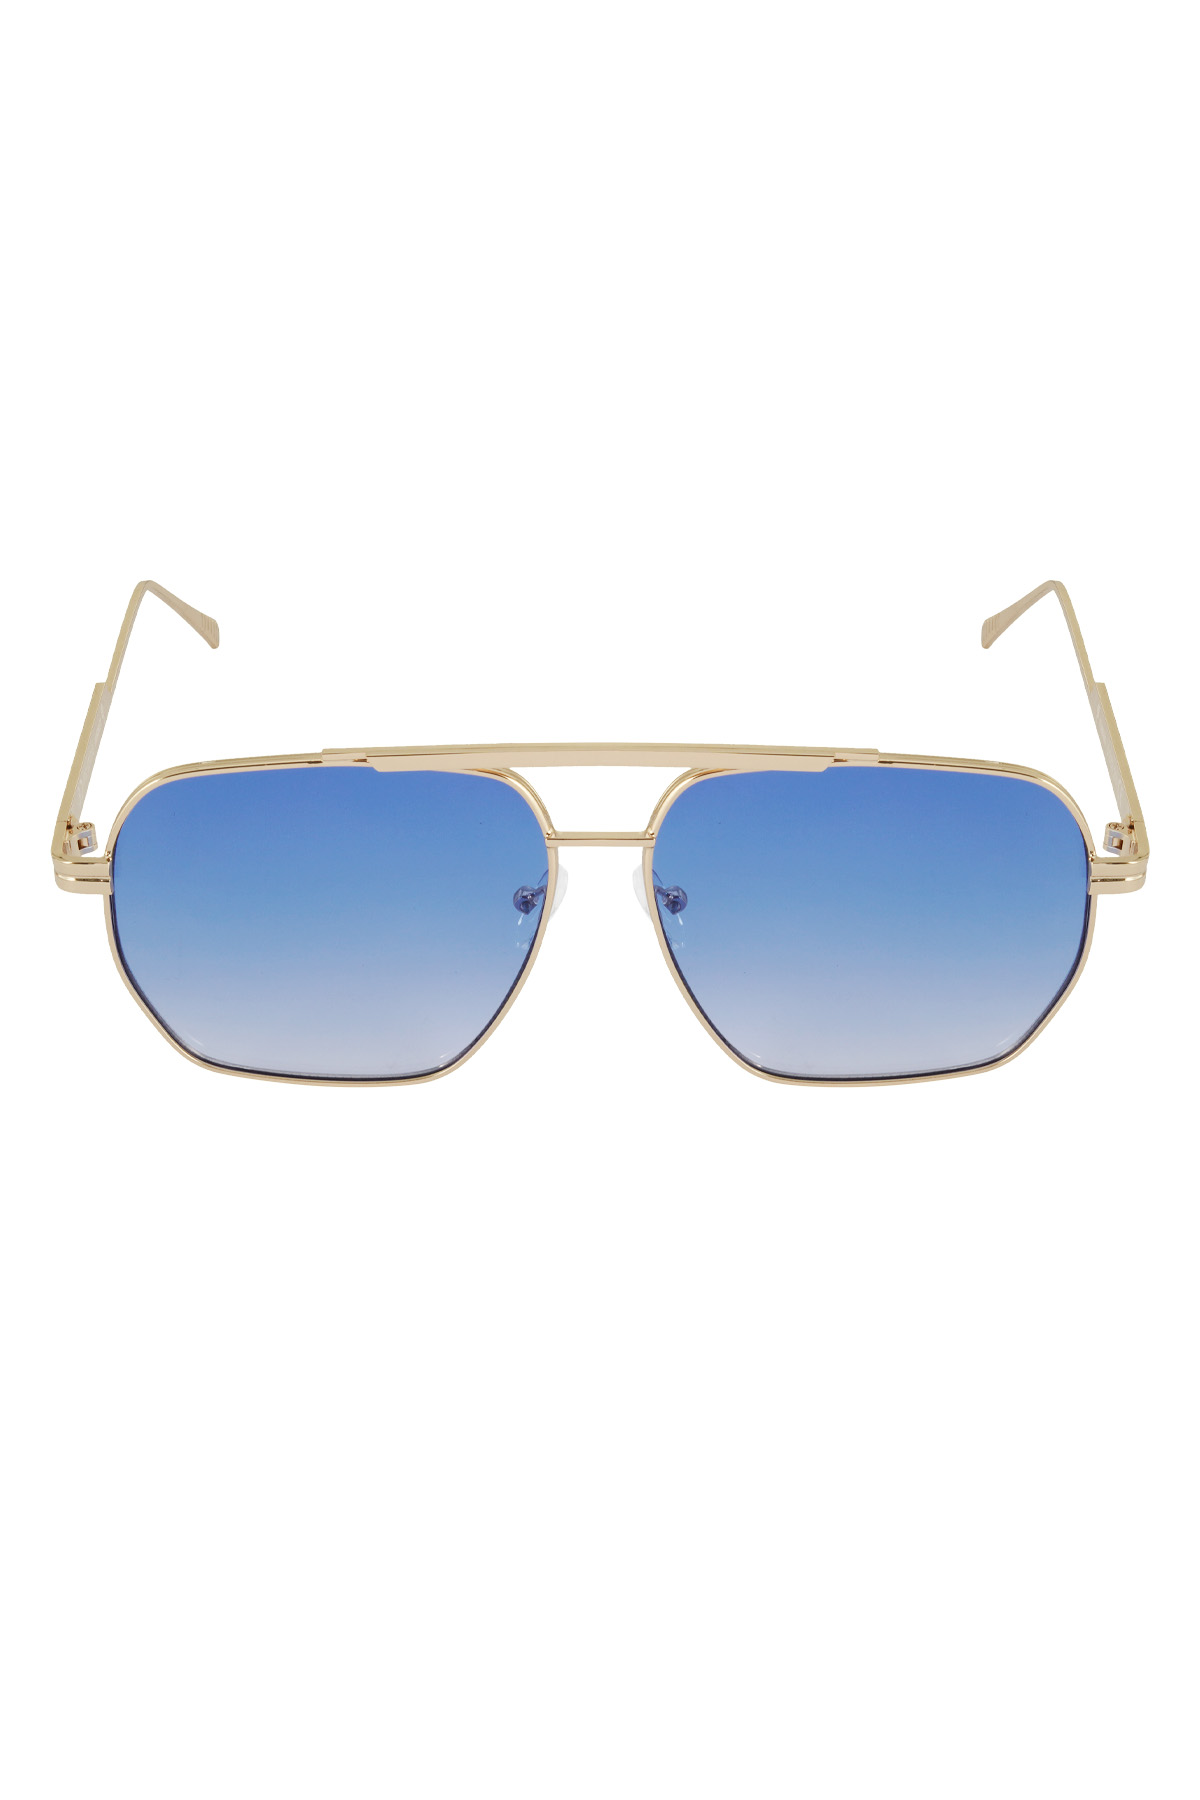 Metal yazlık güneş gözlüğü - Mavi ve altın rengi h5 Resim4